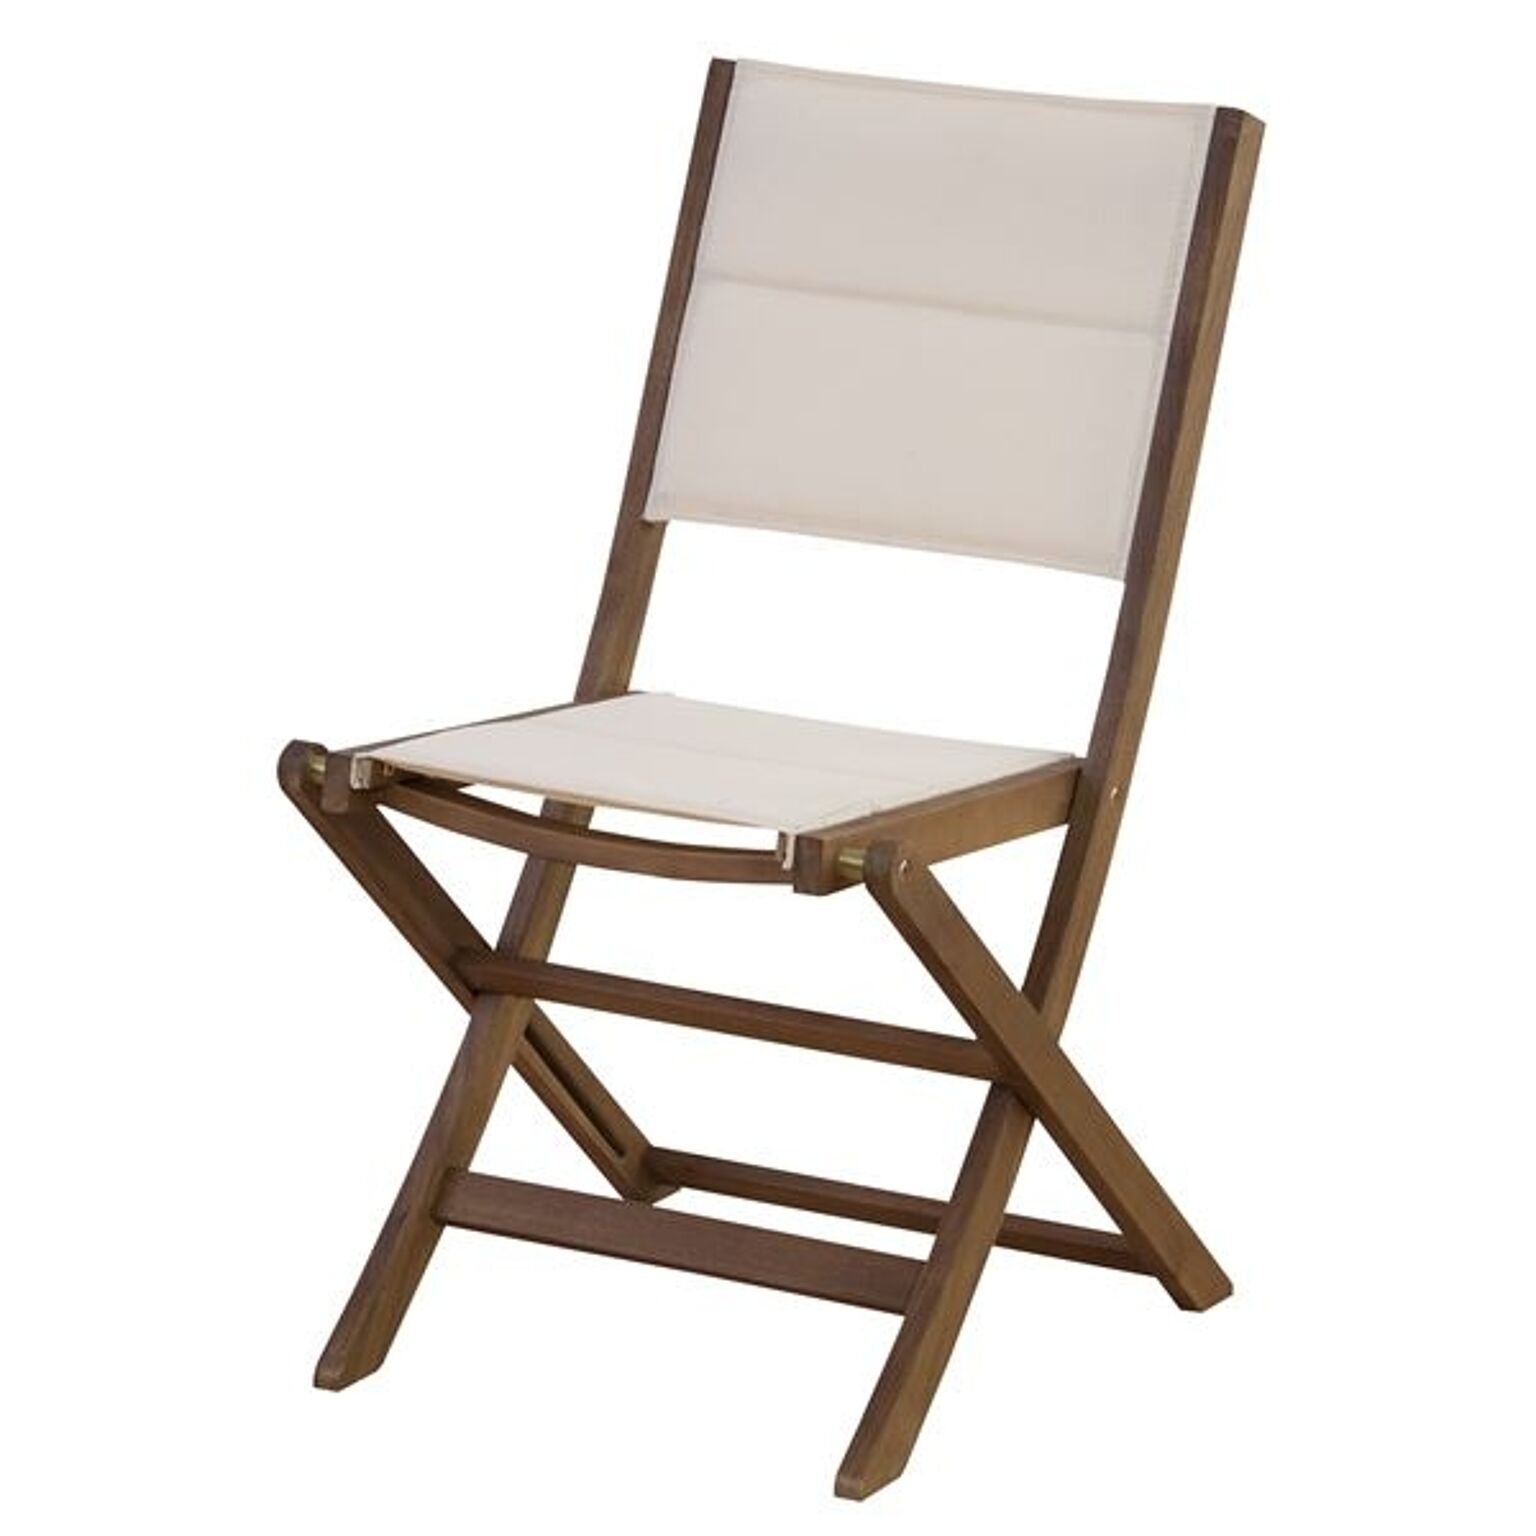 パーソナルチェア 幅48cm 木製 アカシア オイル仕上 室内 屋外 マリーノ ガーデンチェア 椅子 ベランダ デッキ 庭 テラス